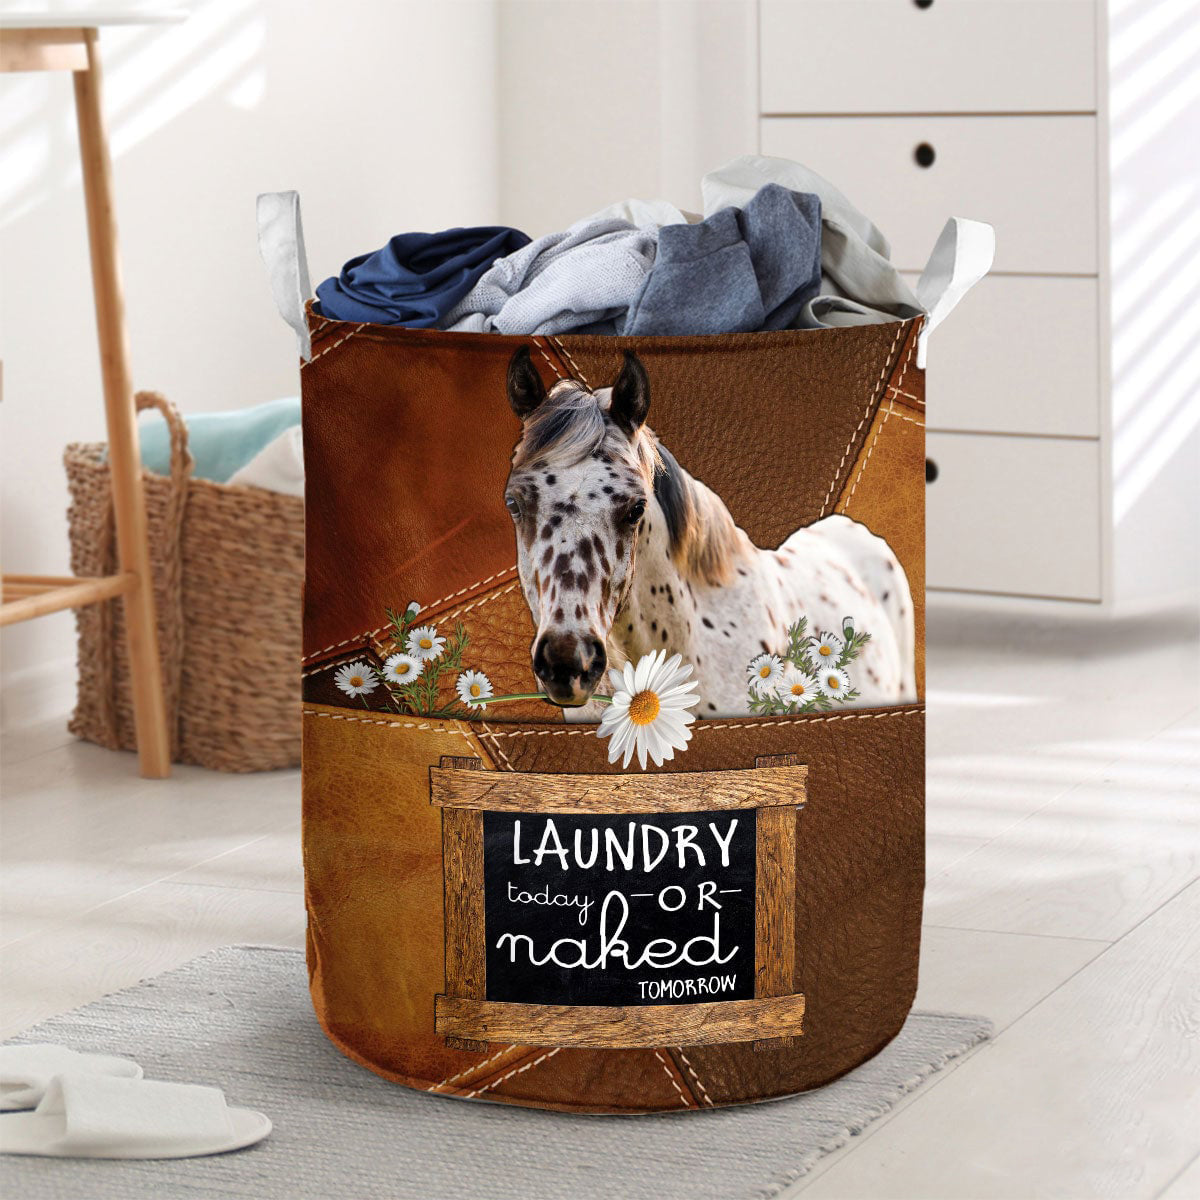 Appaloosa-laundry today or naked tomorrow laundry basket